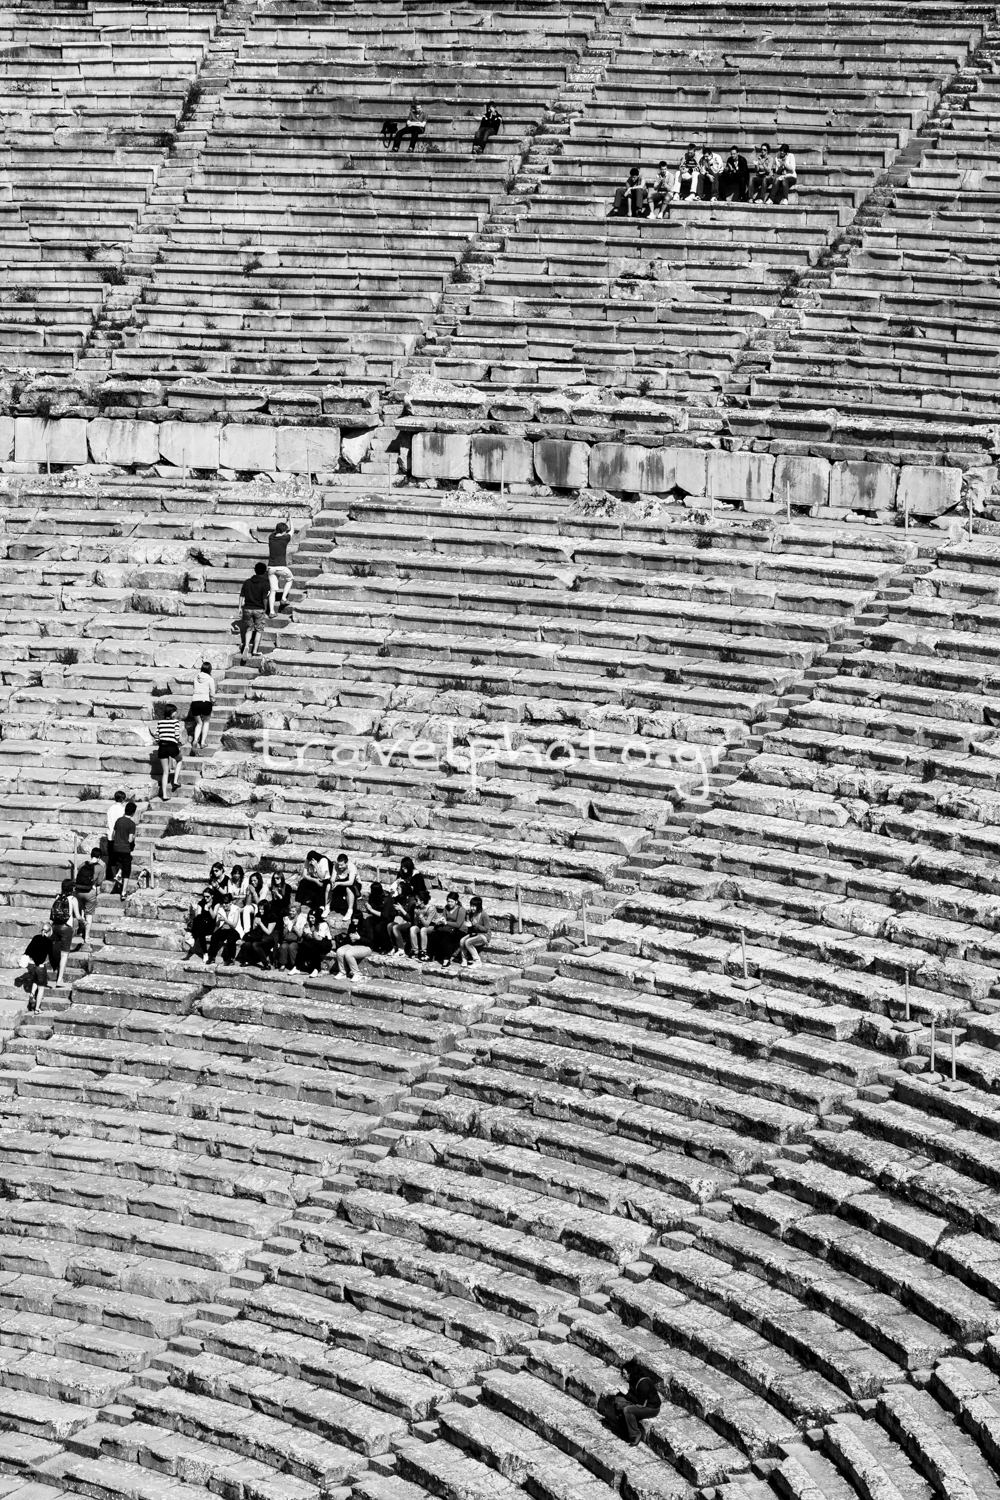 θεατές στο αρχαίο θέατρο Επίδαυρος